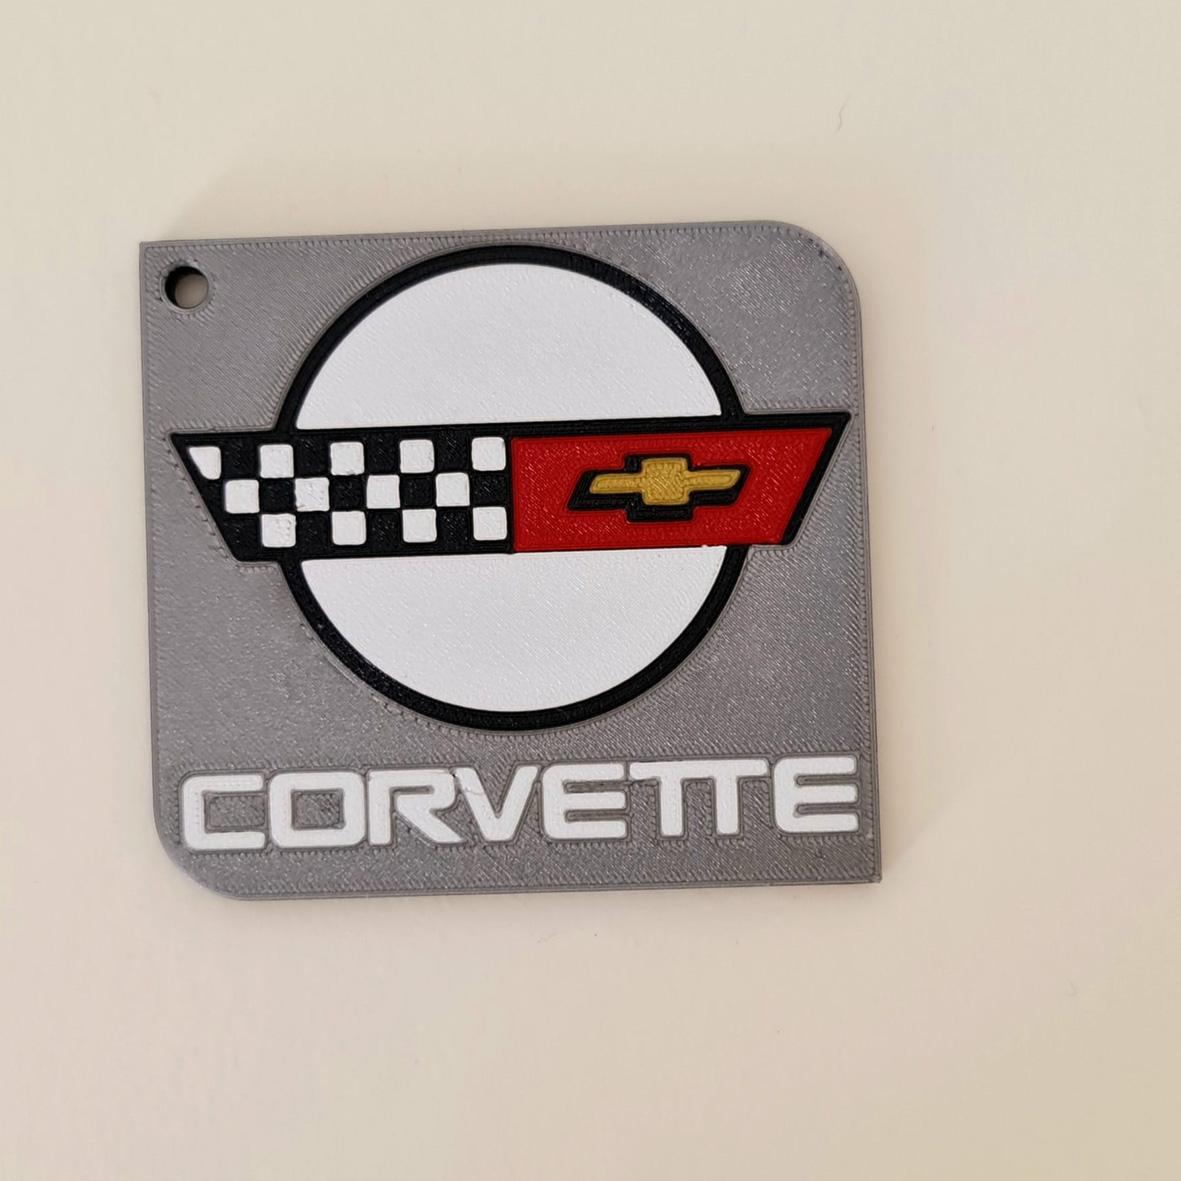 Keychain: Corvette I 3d model